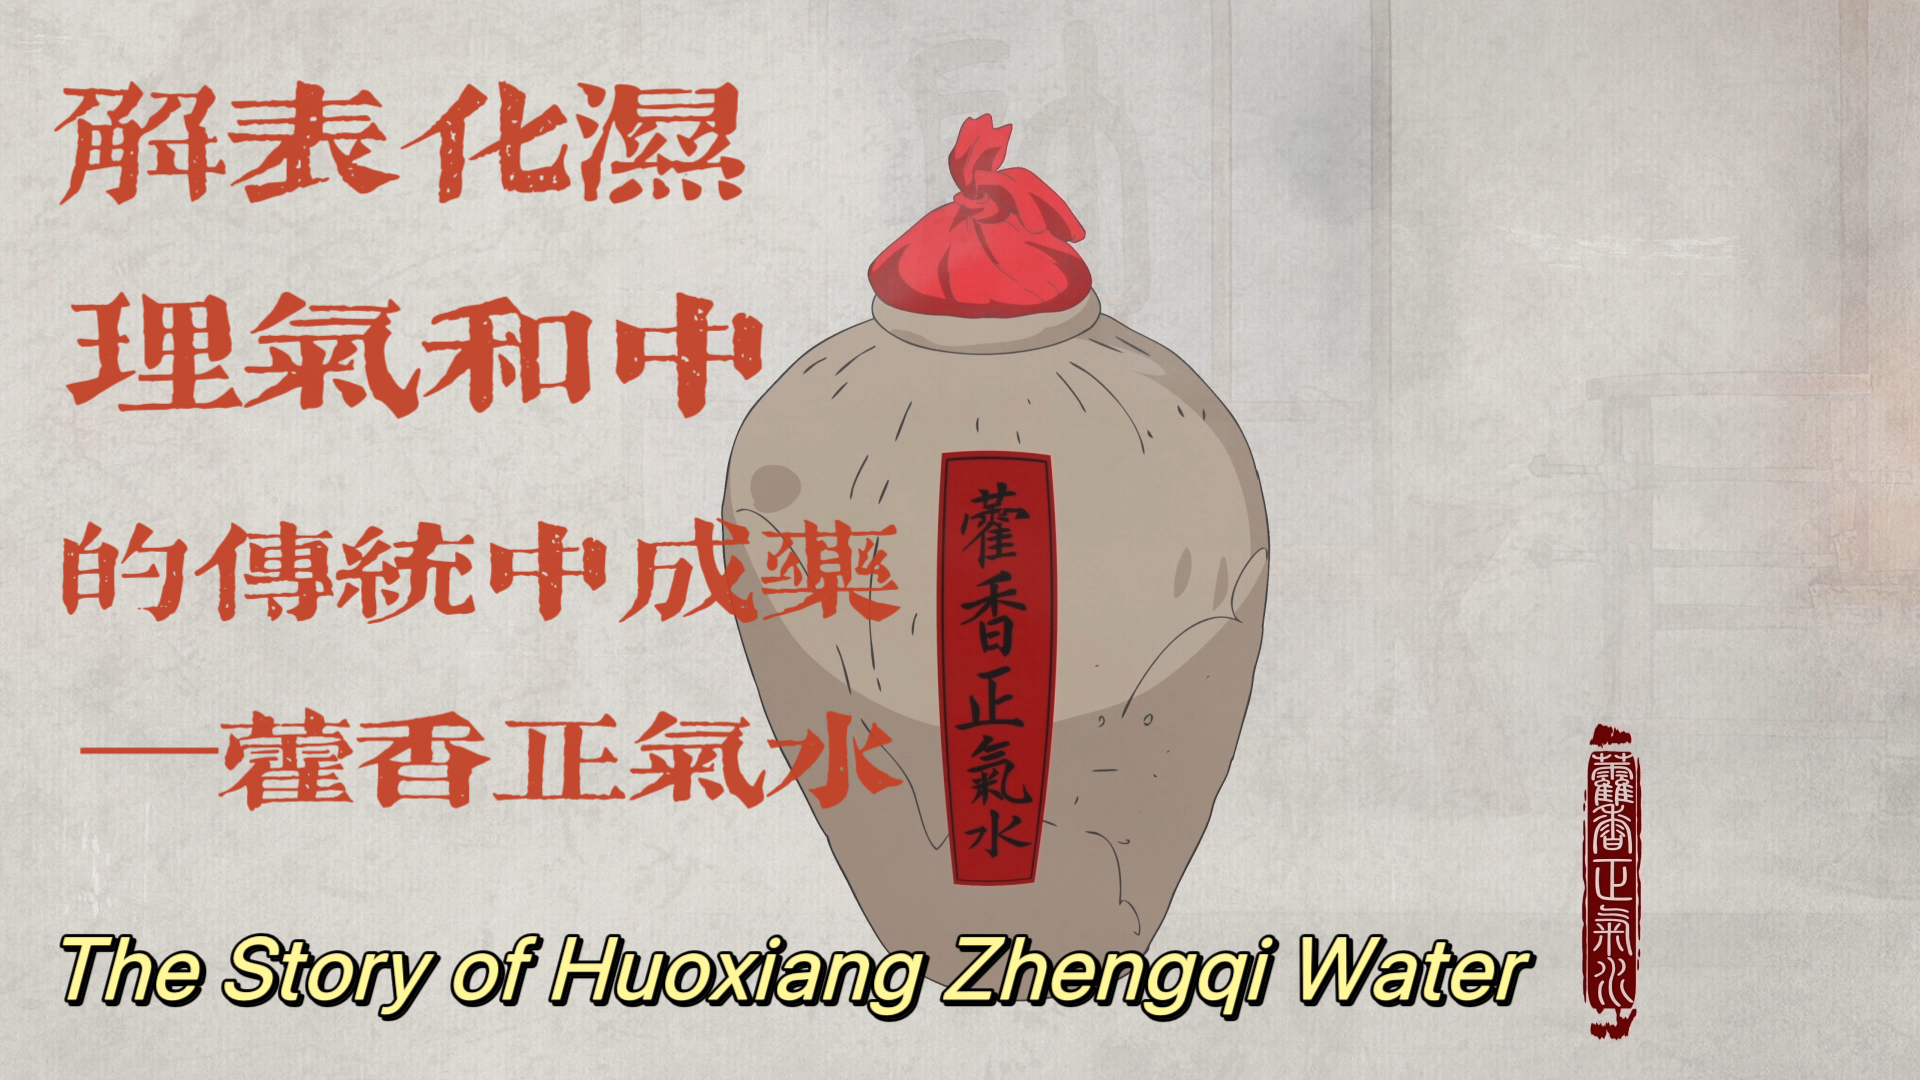 The Story of Huoxiang Zhengqi Water